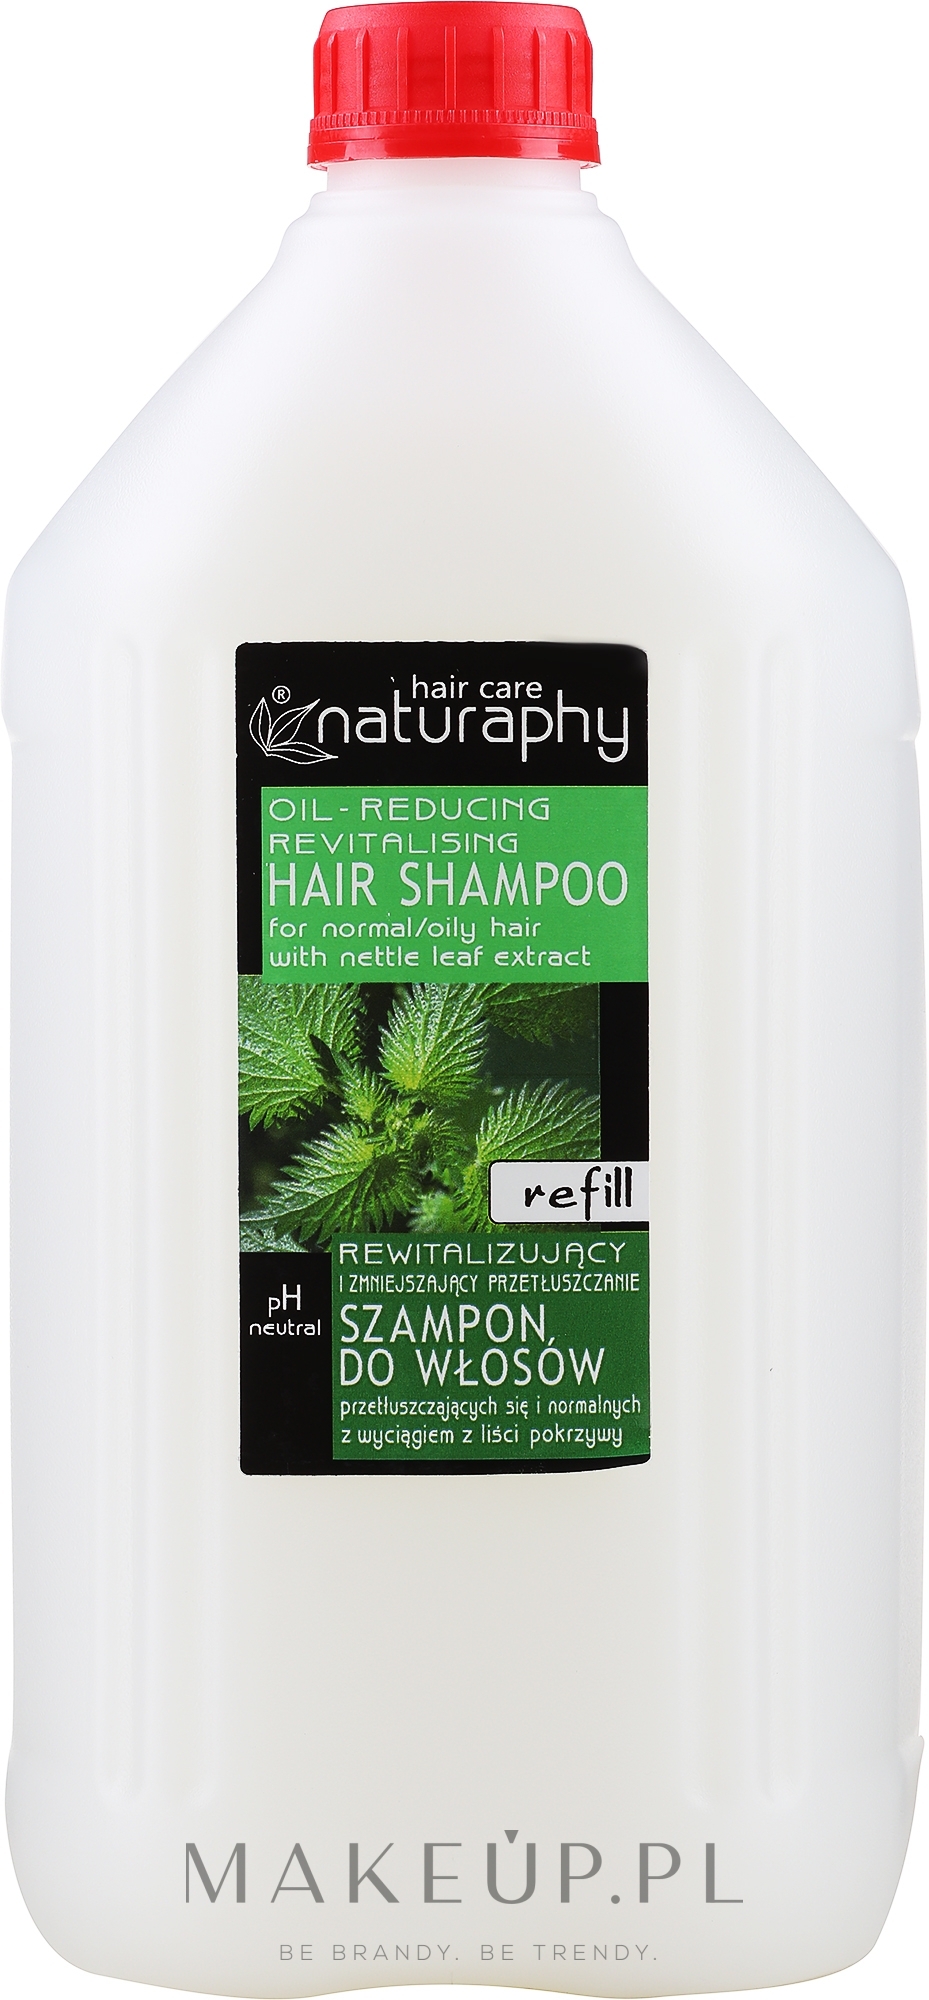 Szampon do włosów przetluszczajacych sie i normalnych z wyciągiem z lisci pokrzywy - Naturaphy Nettle Leaf Extract Shampoo Refill — Zdjęcie 5000 ml